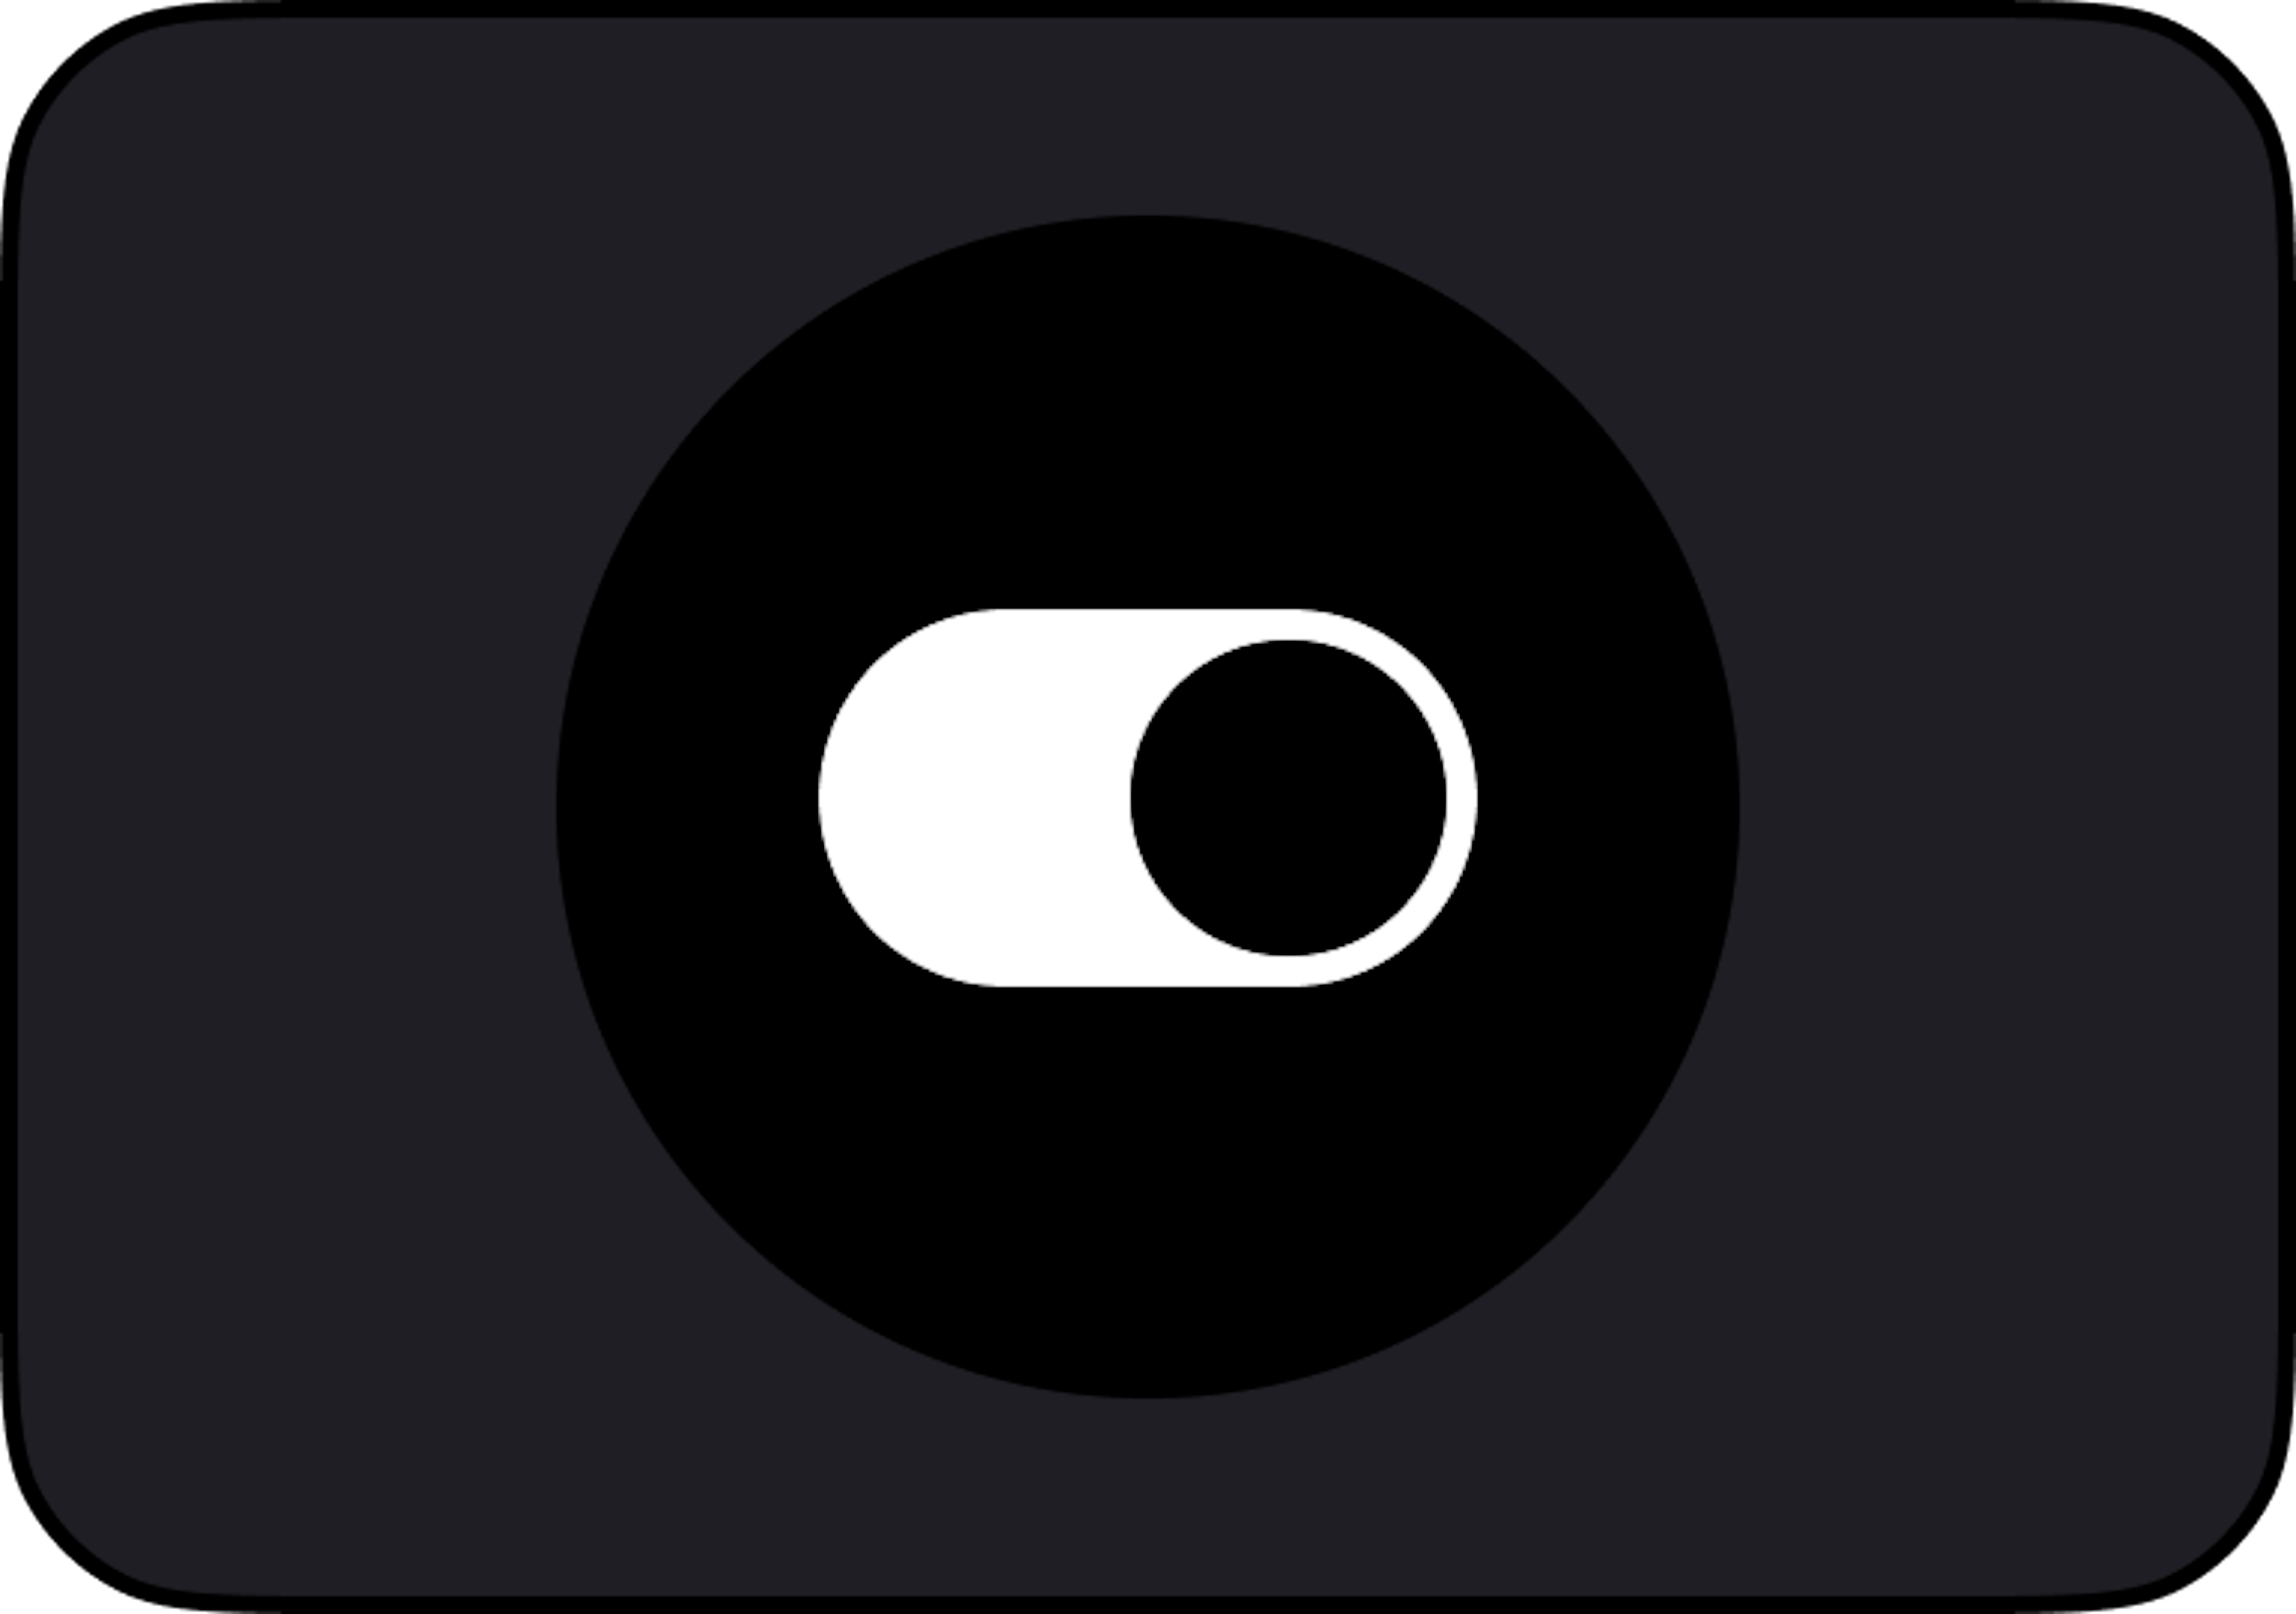 Svart av- och påknapp med vit cirkel för Volvo On Demand logotyp